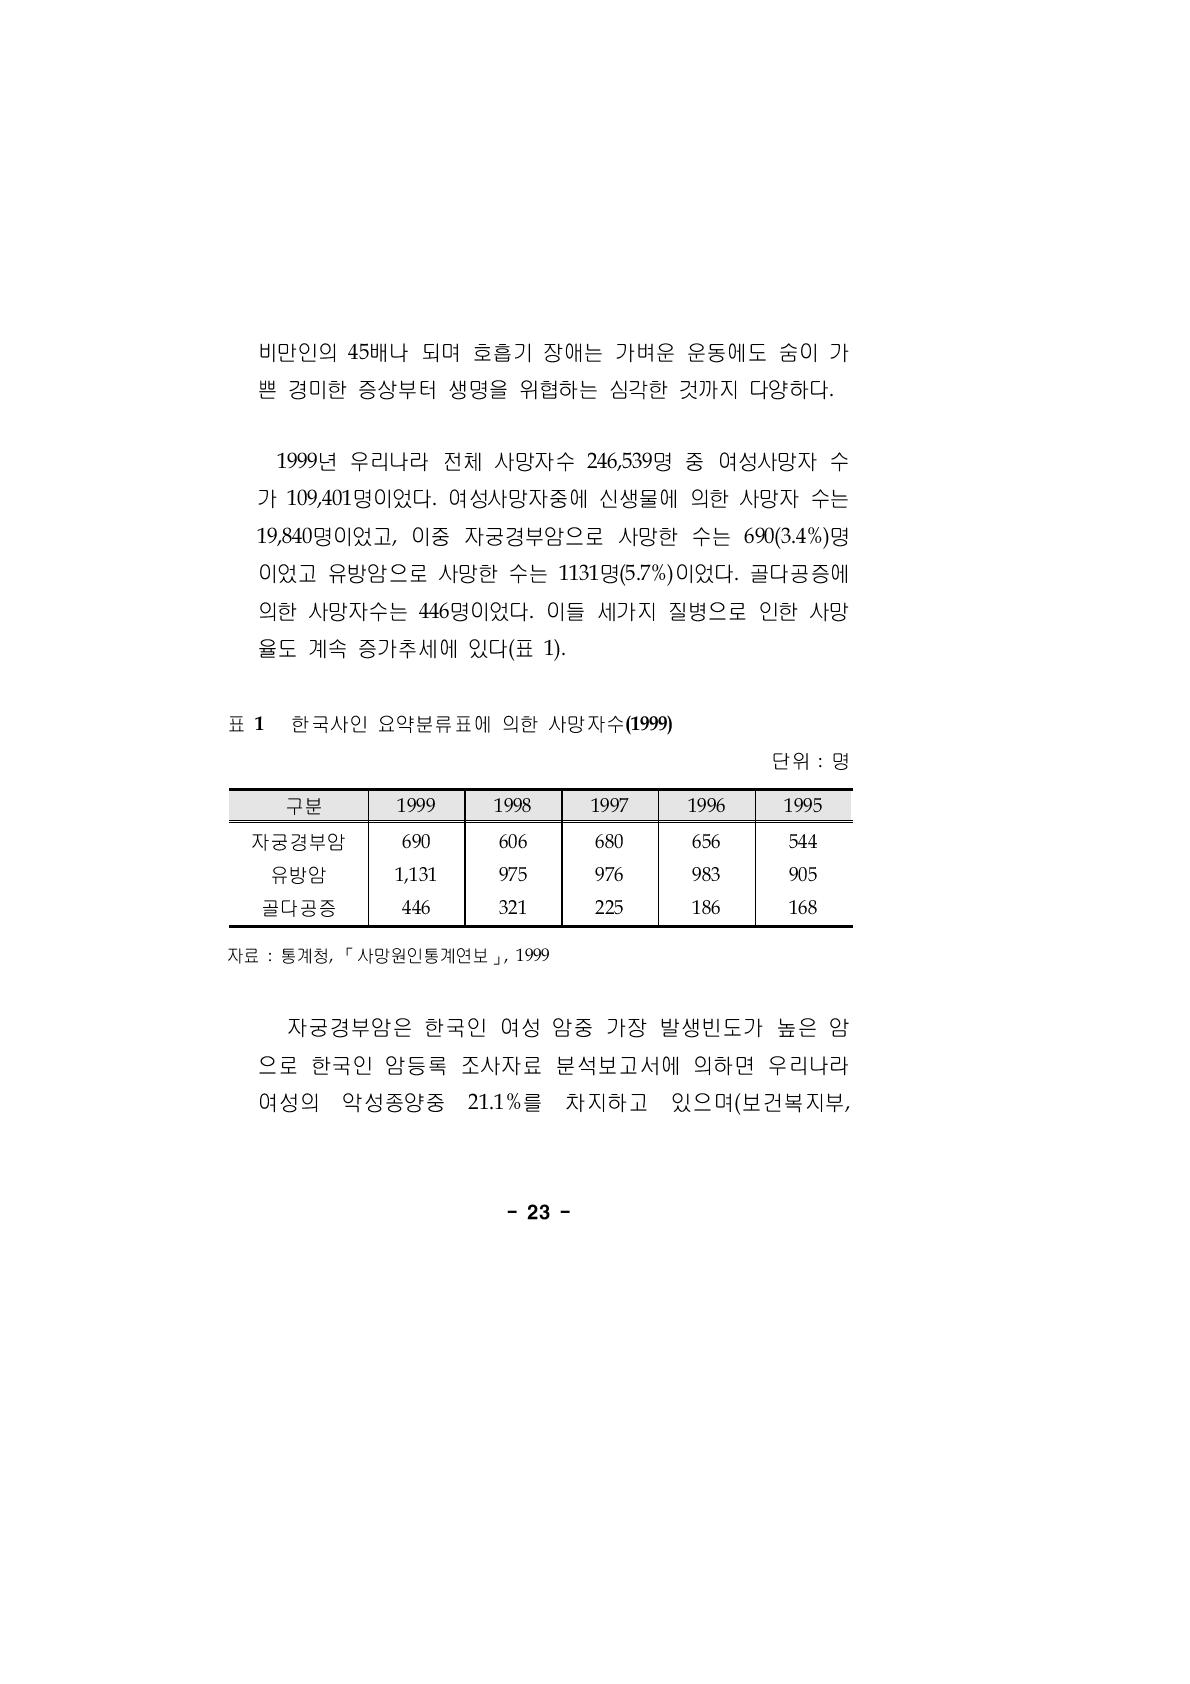 한국사인 요약분류표에 의한 사망자수(1999)